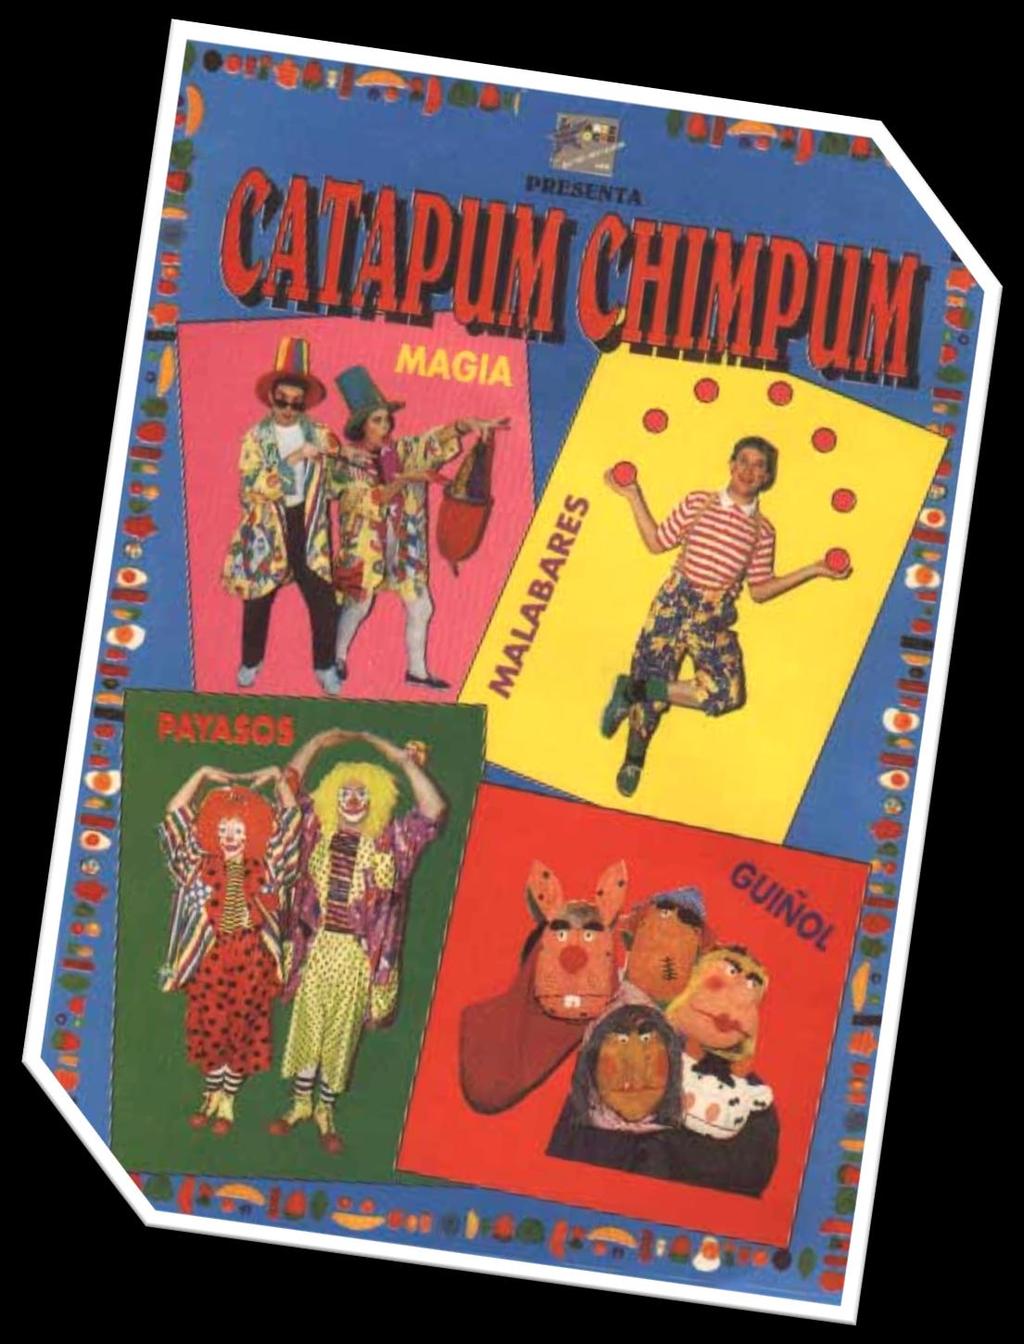 CATAPUM CHIMPUM Catapum Chimpum Payasos, Magia, Malabares, Teatro de Guiñol y concursos.